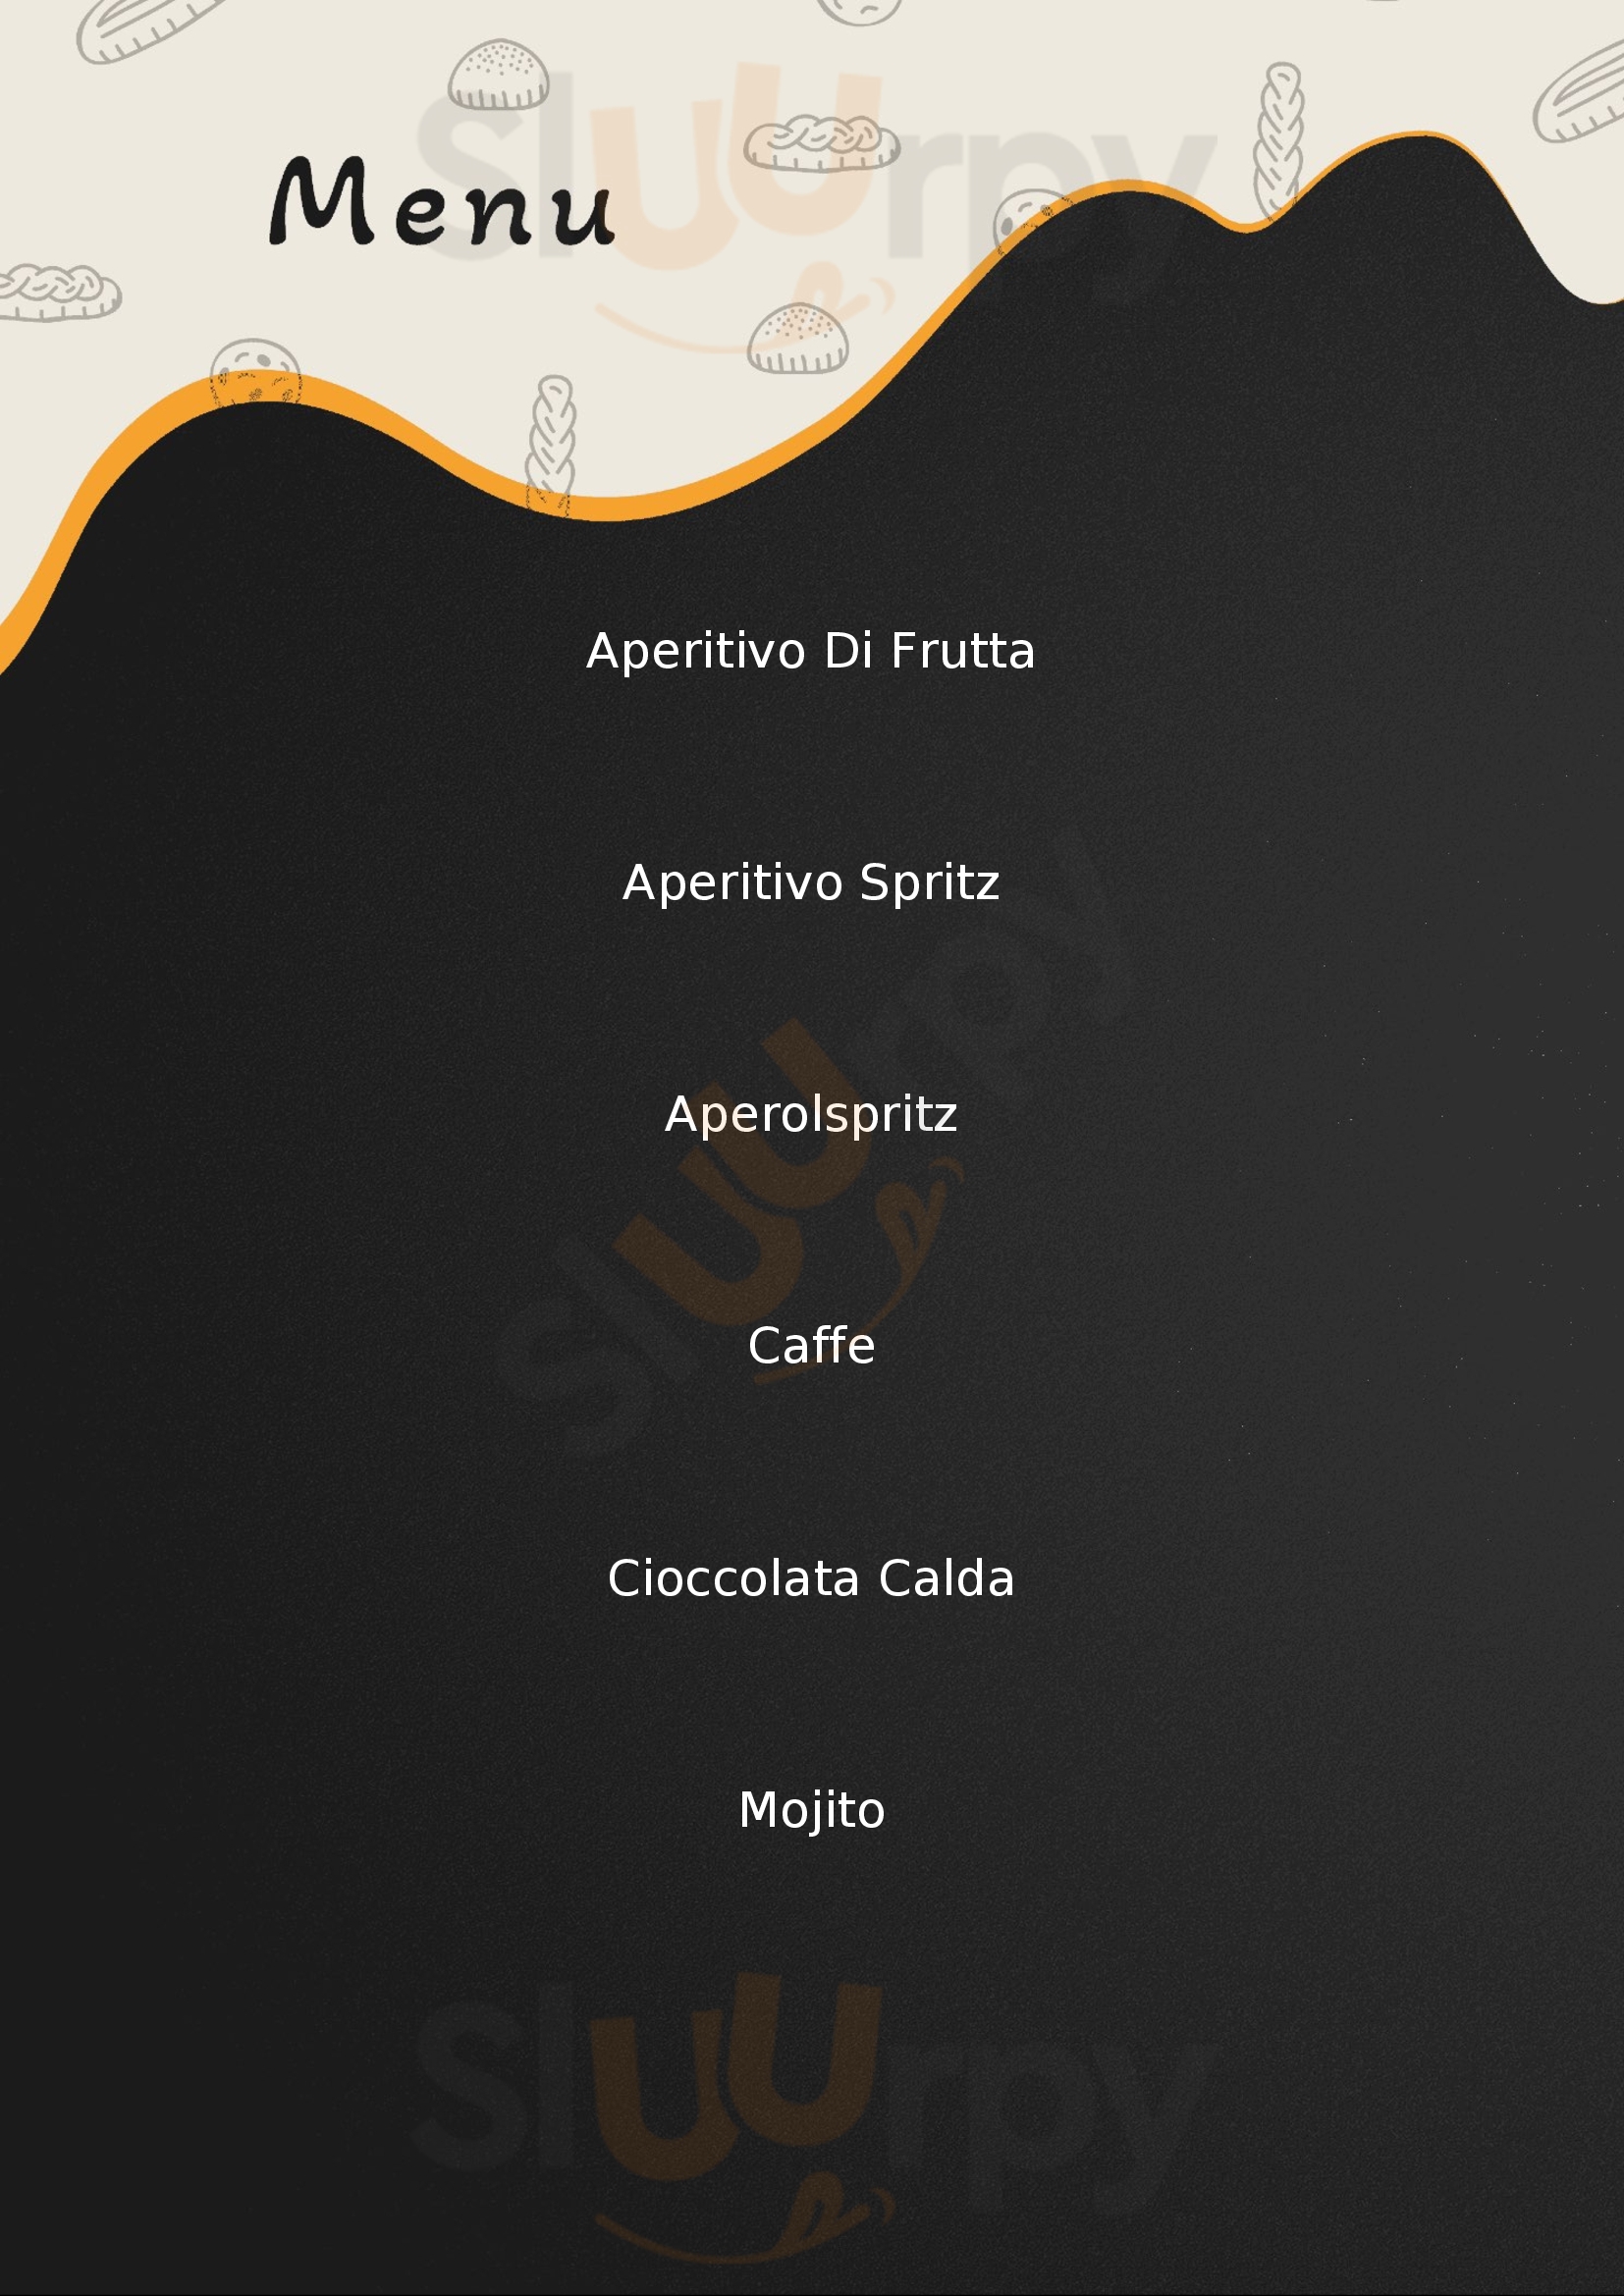 MaDo Cafè Alba Adriatica menù 1 pagina